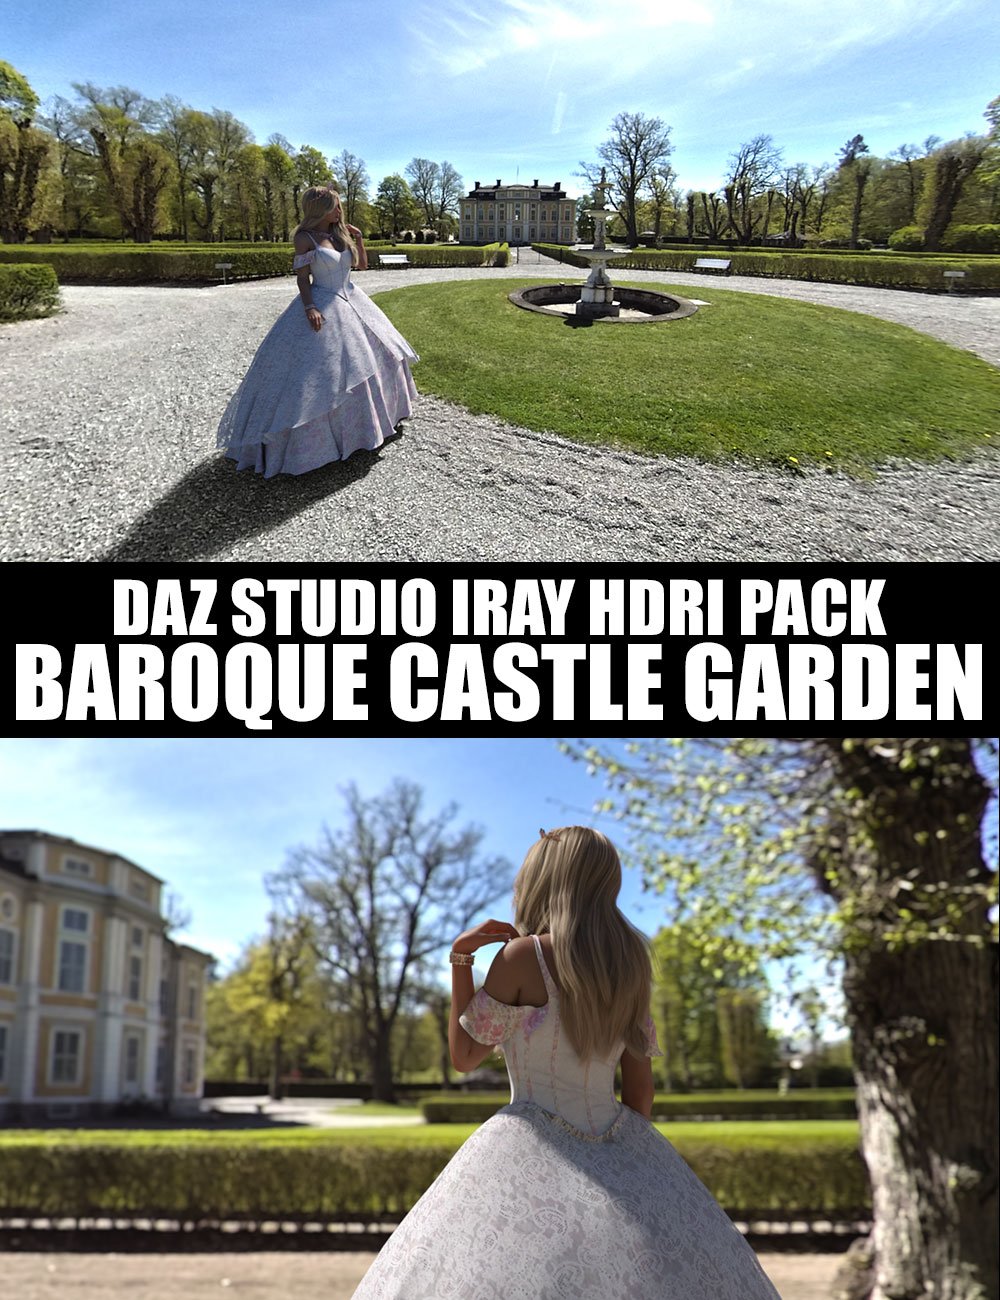 Baroque Castle Garden - Daz Studio Iray HDRI Pack by: Dreamlight, 3D Models by Daz 3D